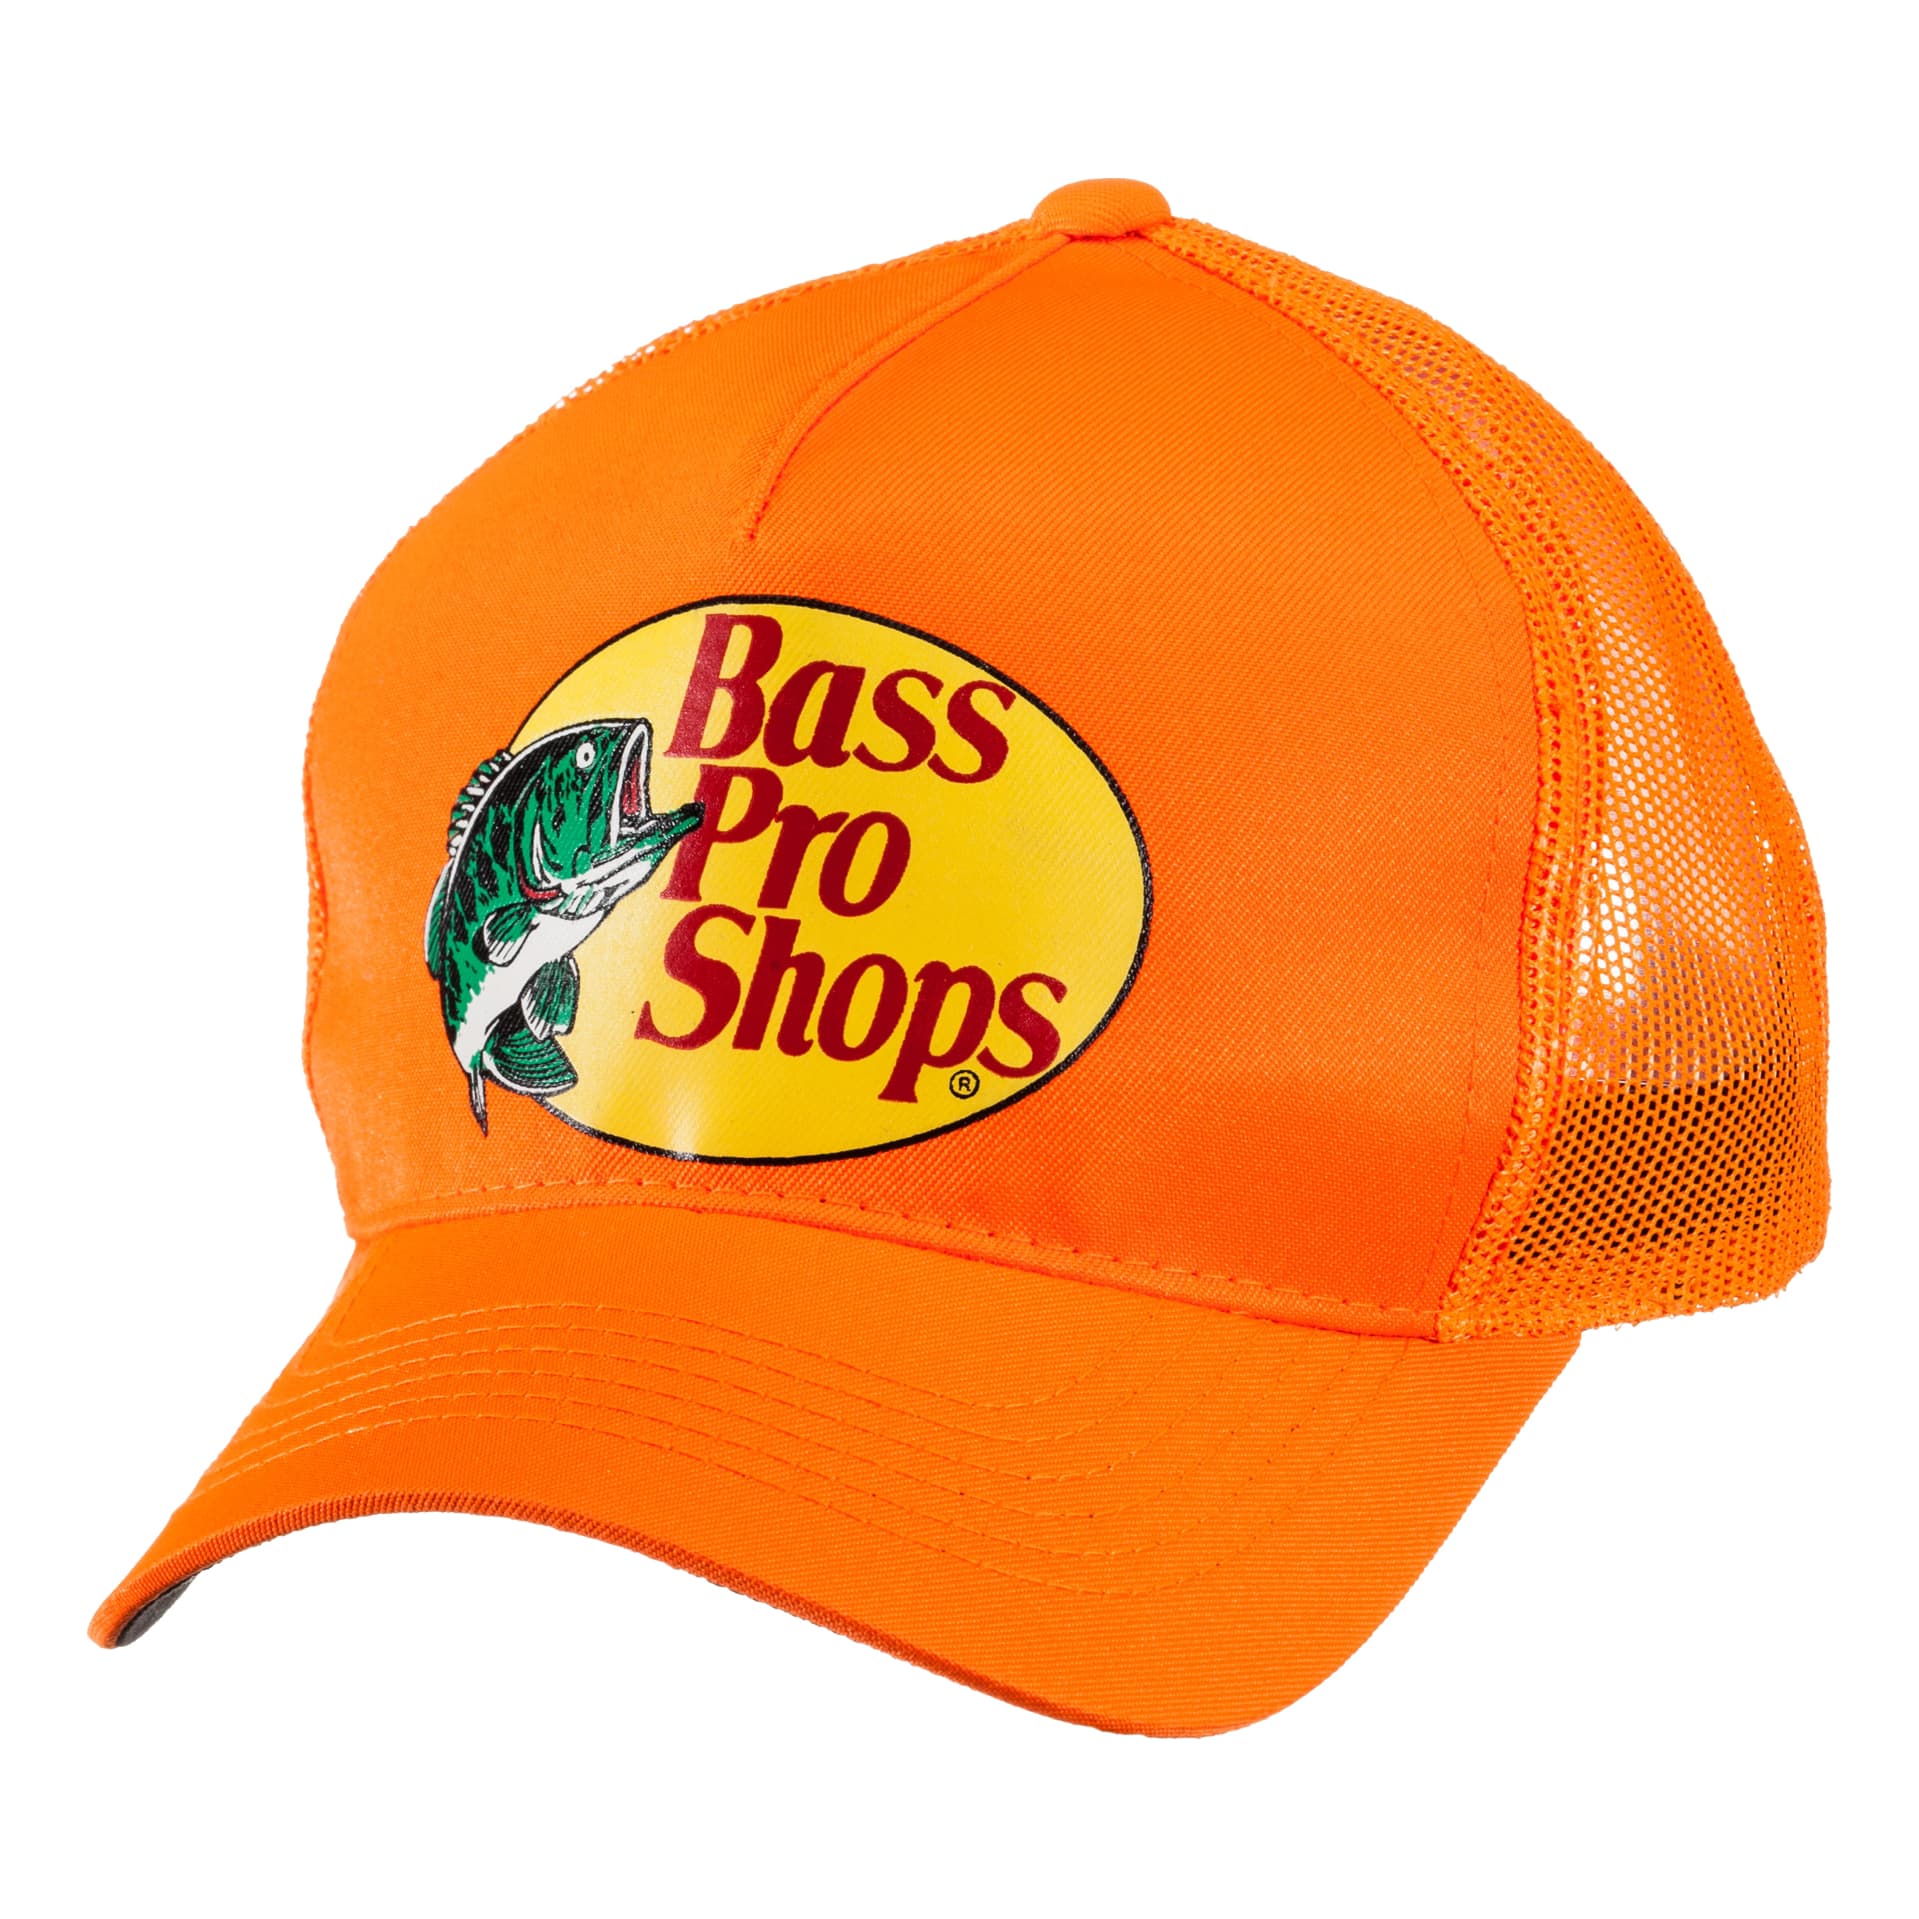 Bass Pro Shops® Trucker Cap - Blaze